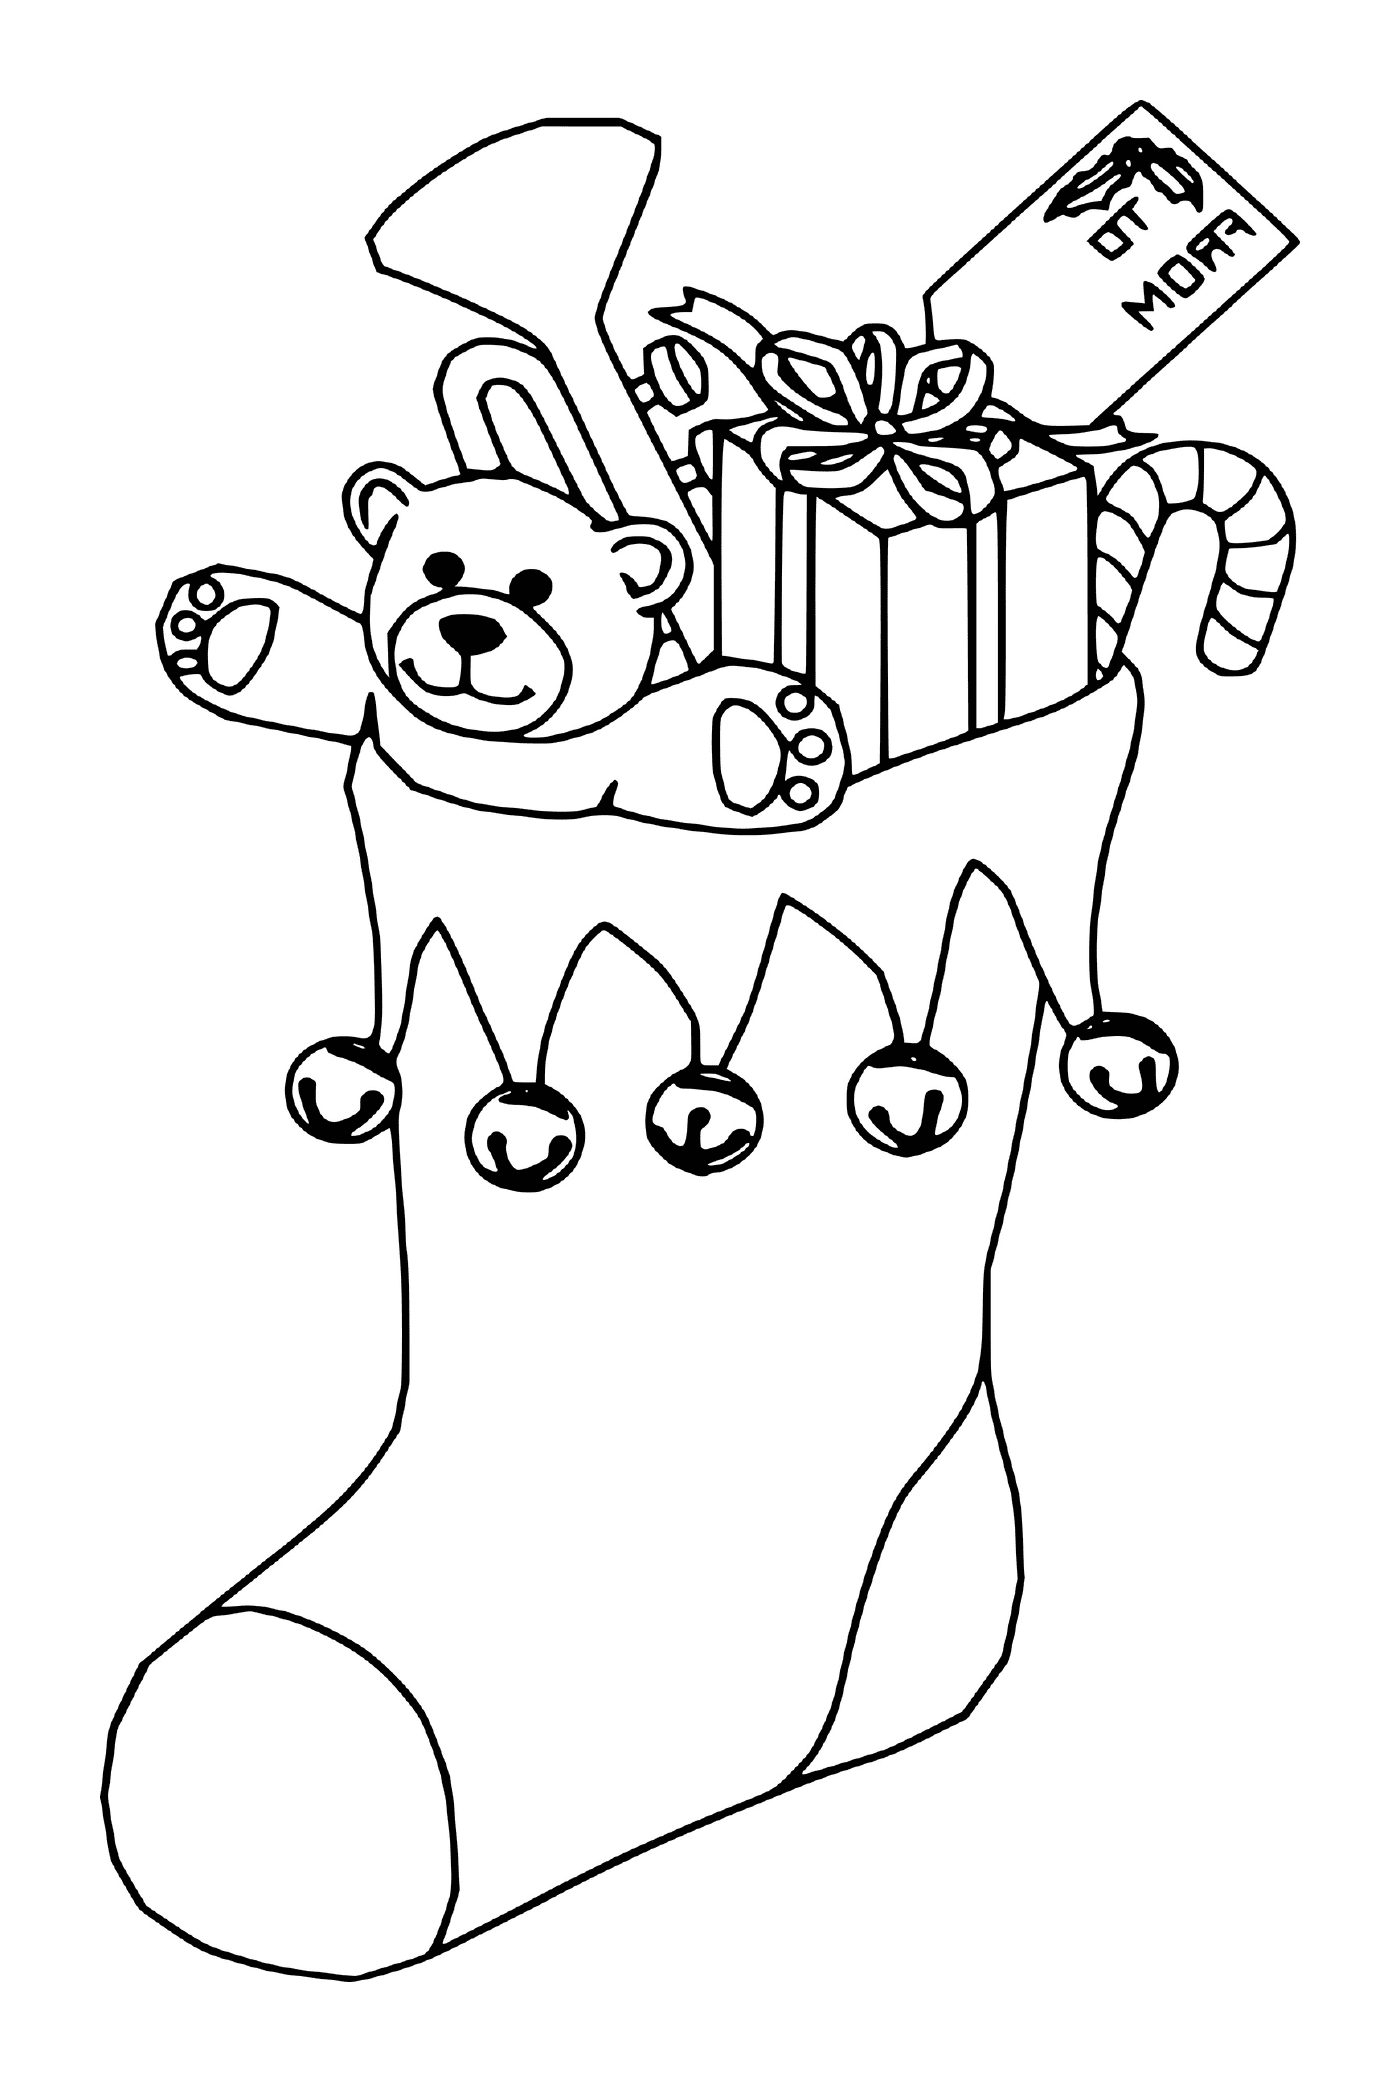  Плюшевый медведь играет на трубе в рождественских чулках 